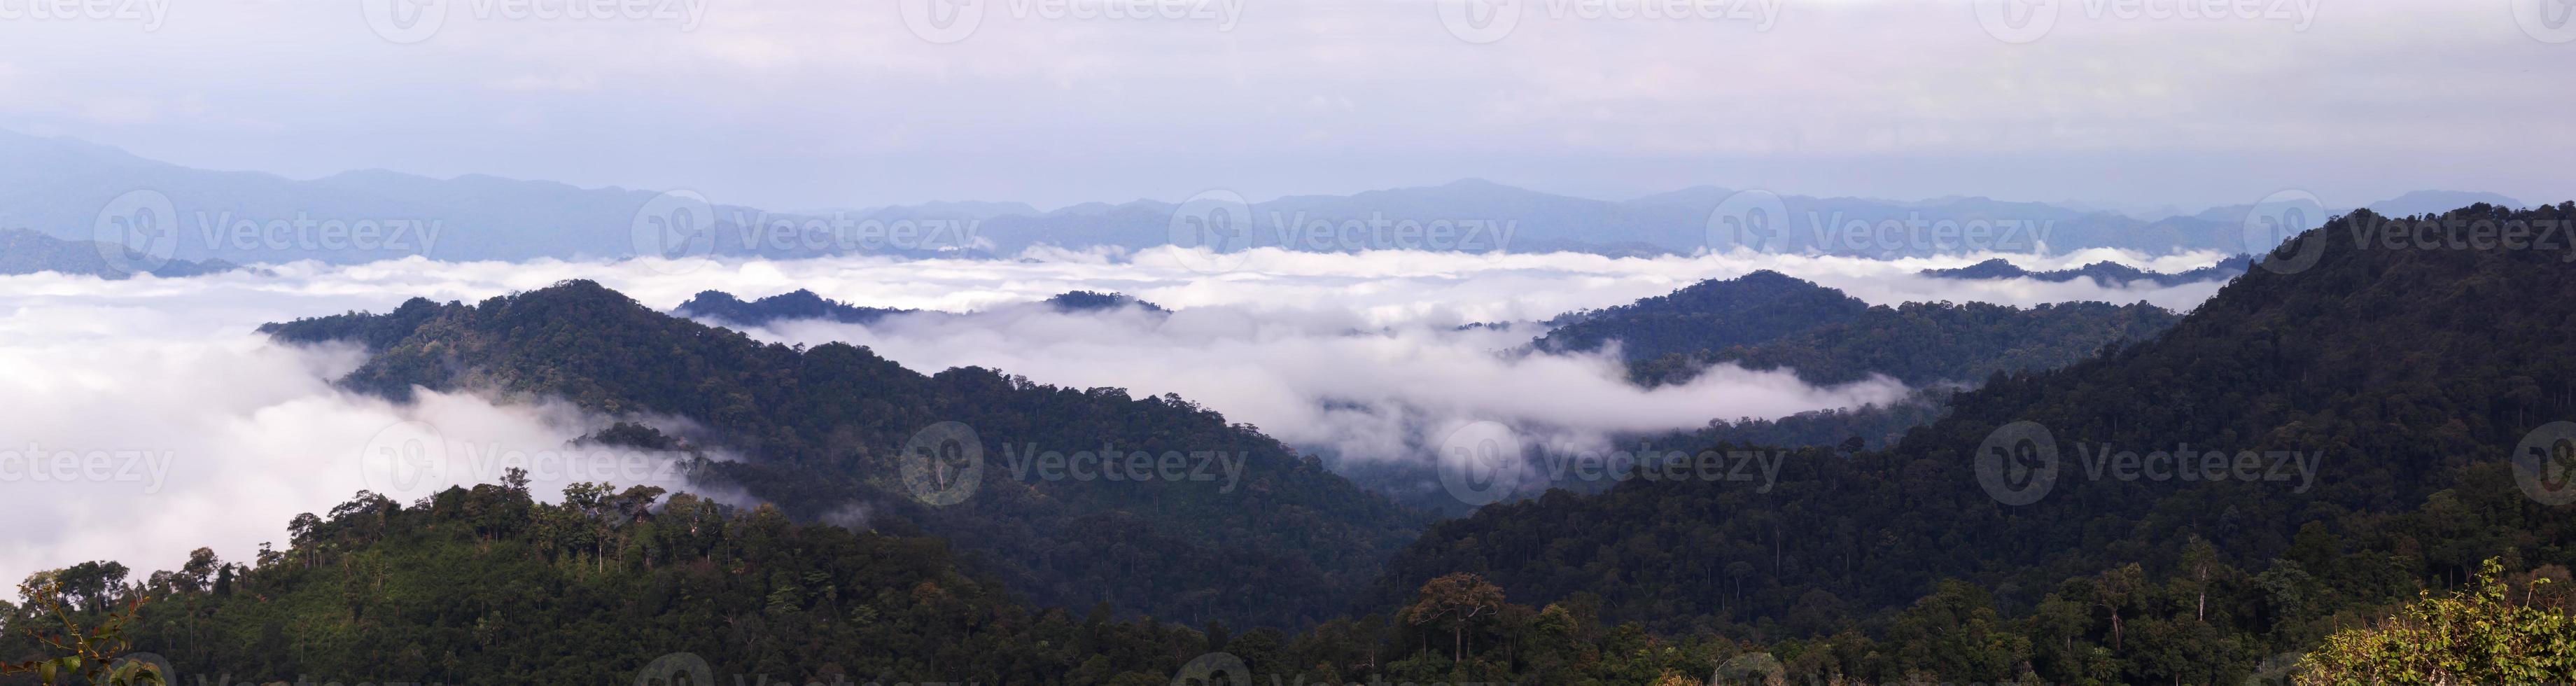 catene montuose con nebbia nel panorama foto